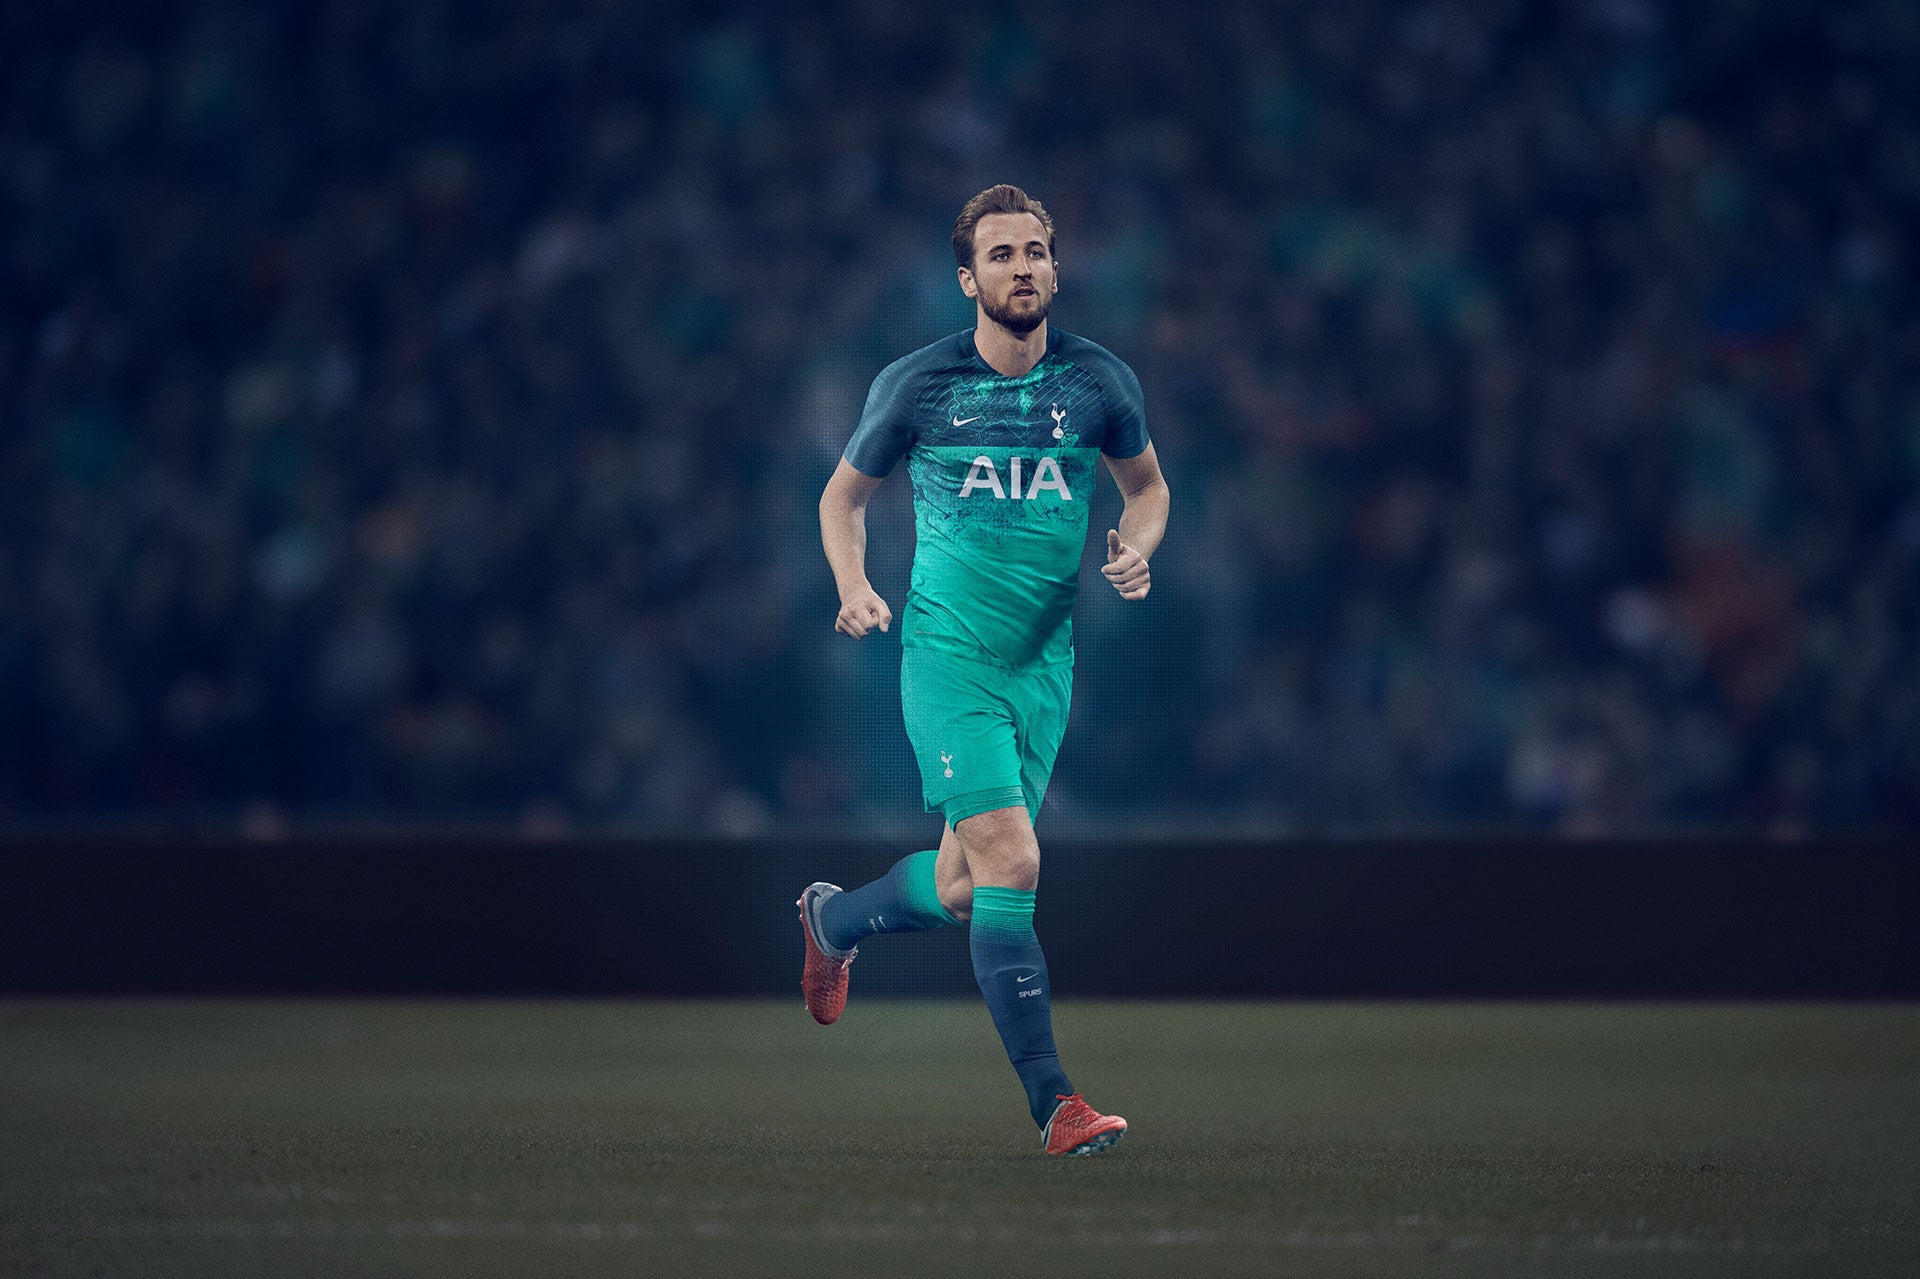 Iraqi Top Club Steals Nike Tottenham 18-19 Third Kit Design - Footy  Headlines